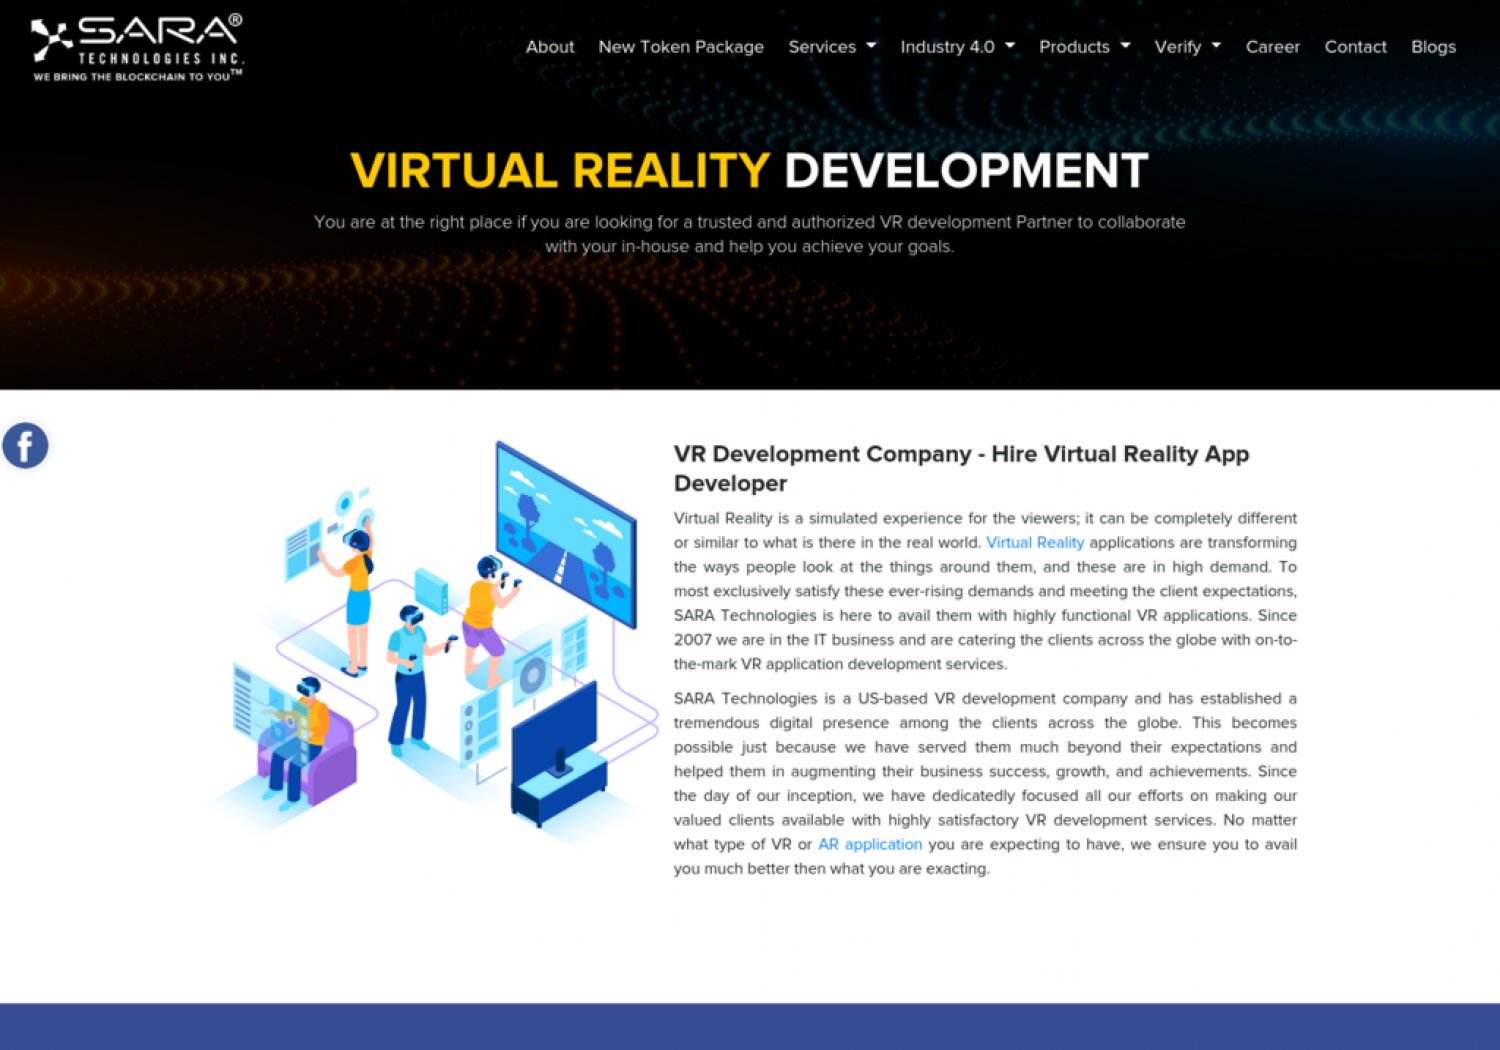 Hire a Virtual Reality Development Company Infographic